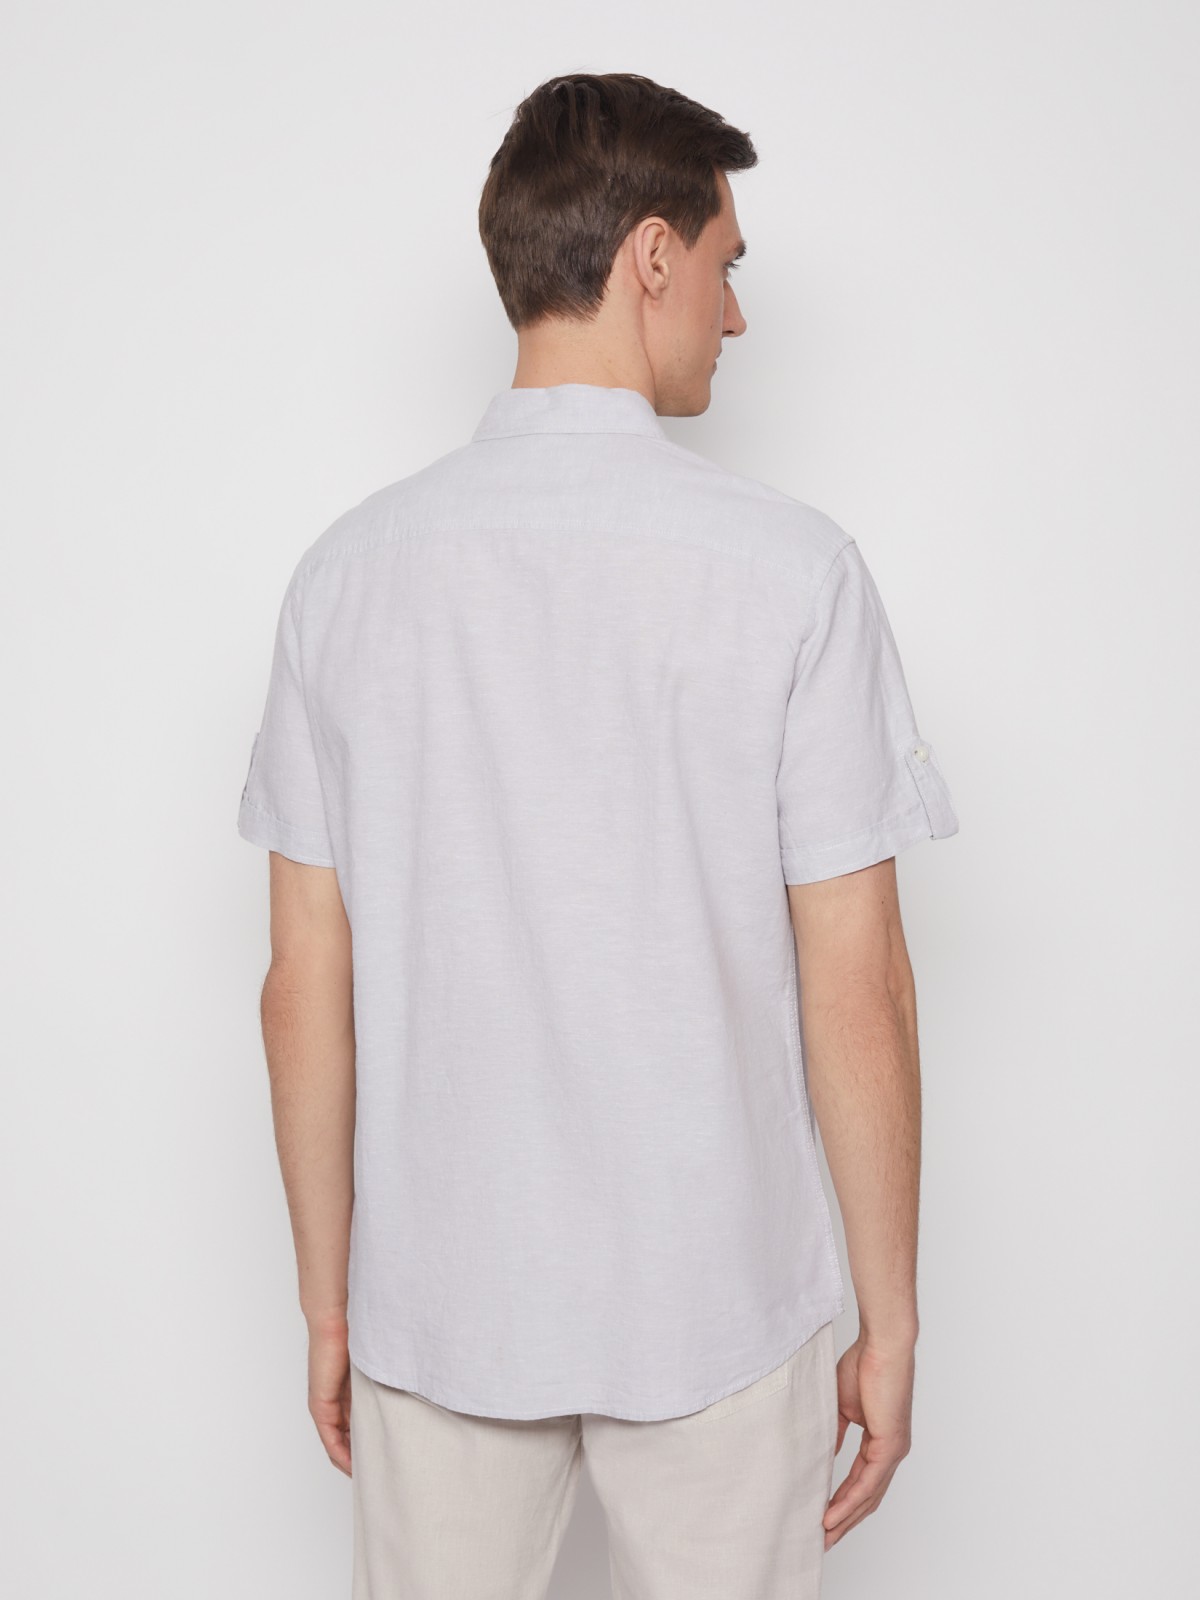 Рубашка с коротким рукавом zolla 012232259013, цвет светло-серый, размер S - фото 6